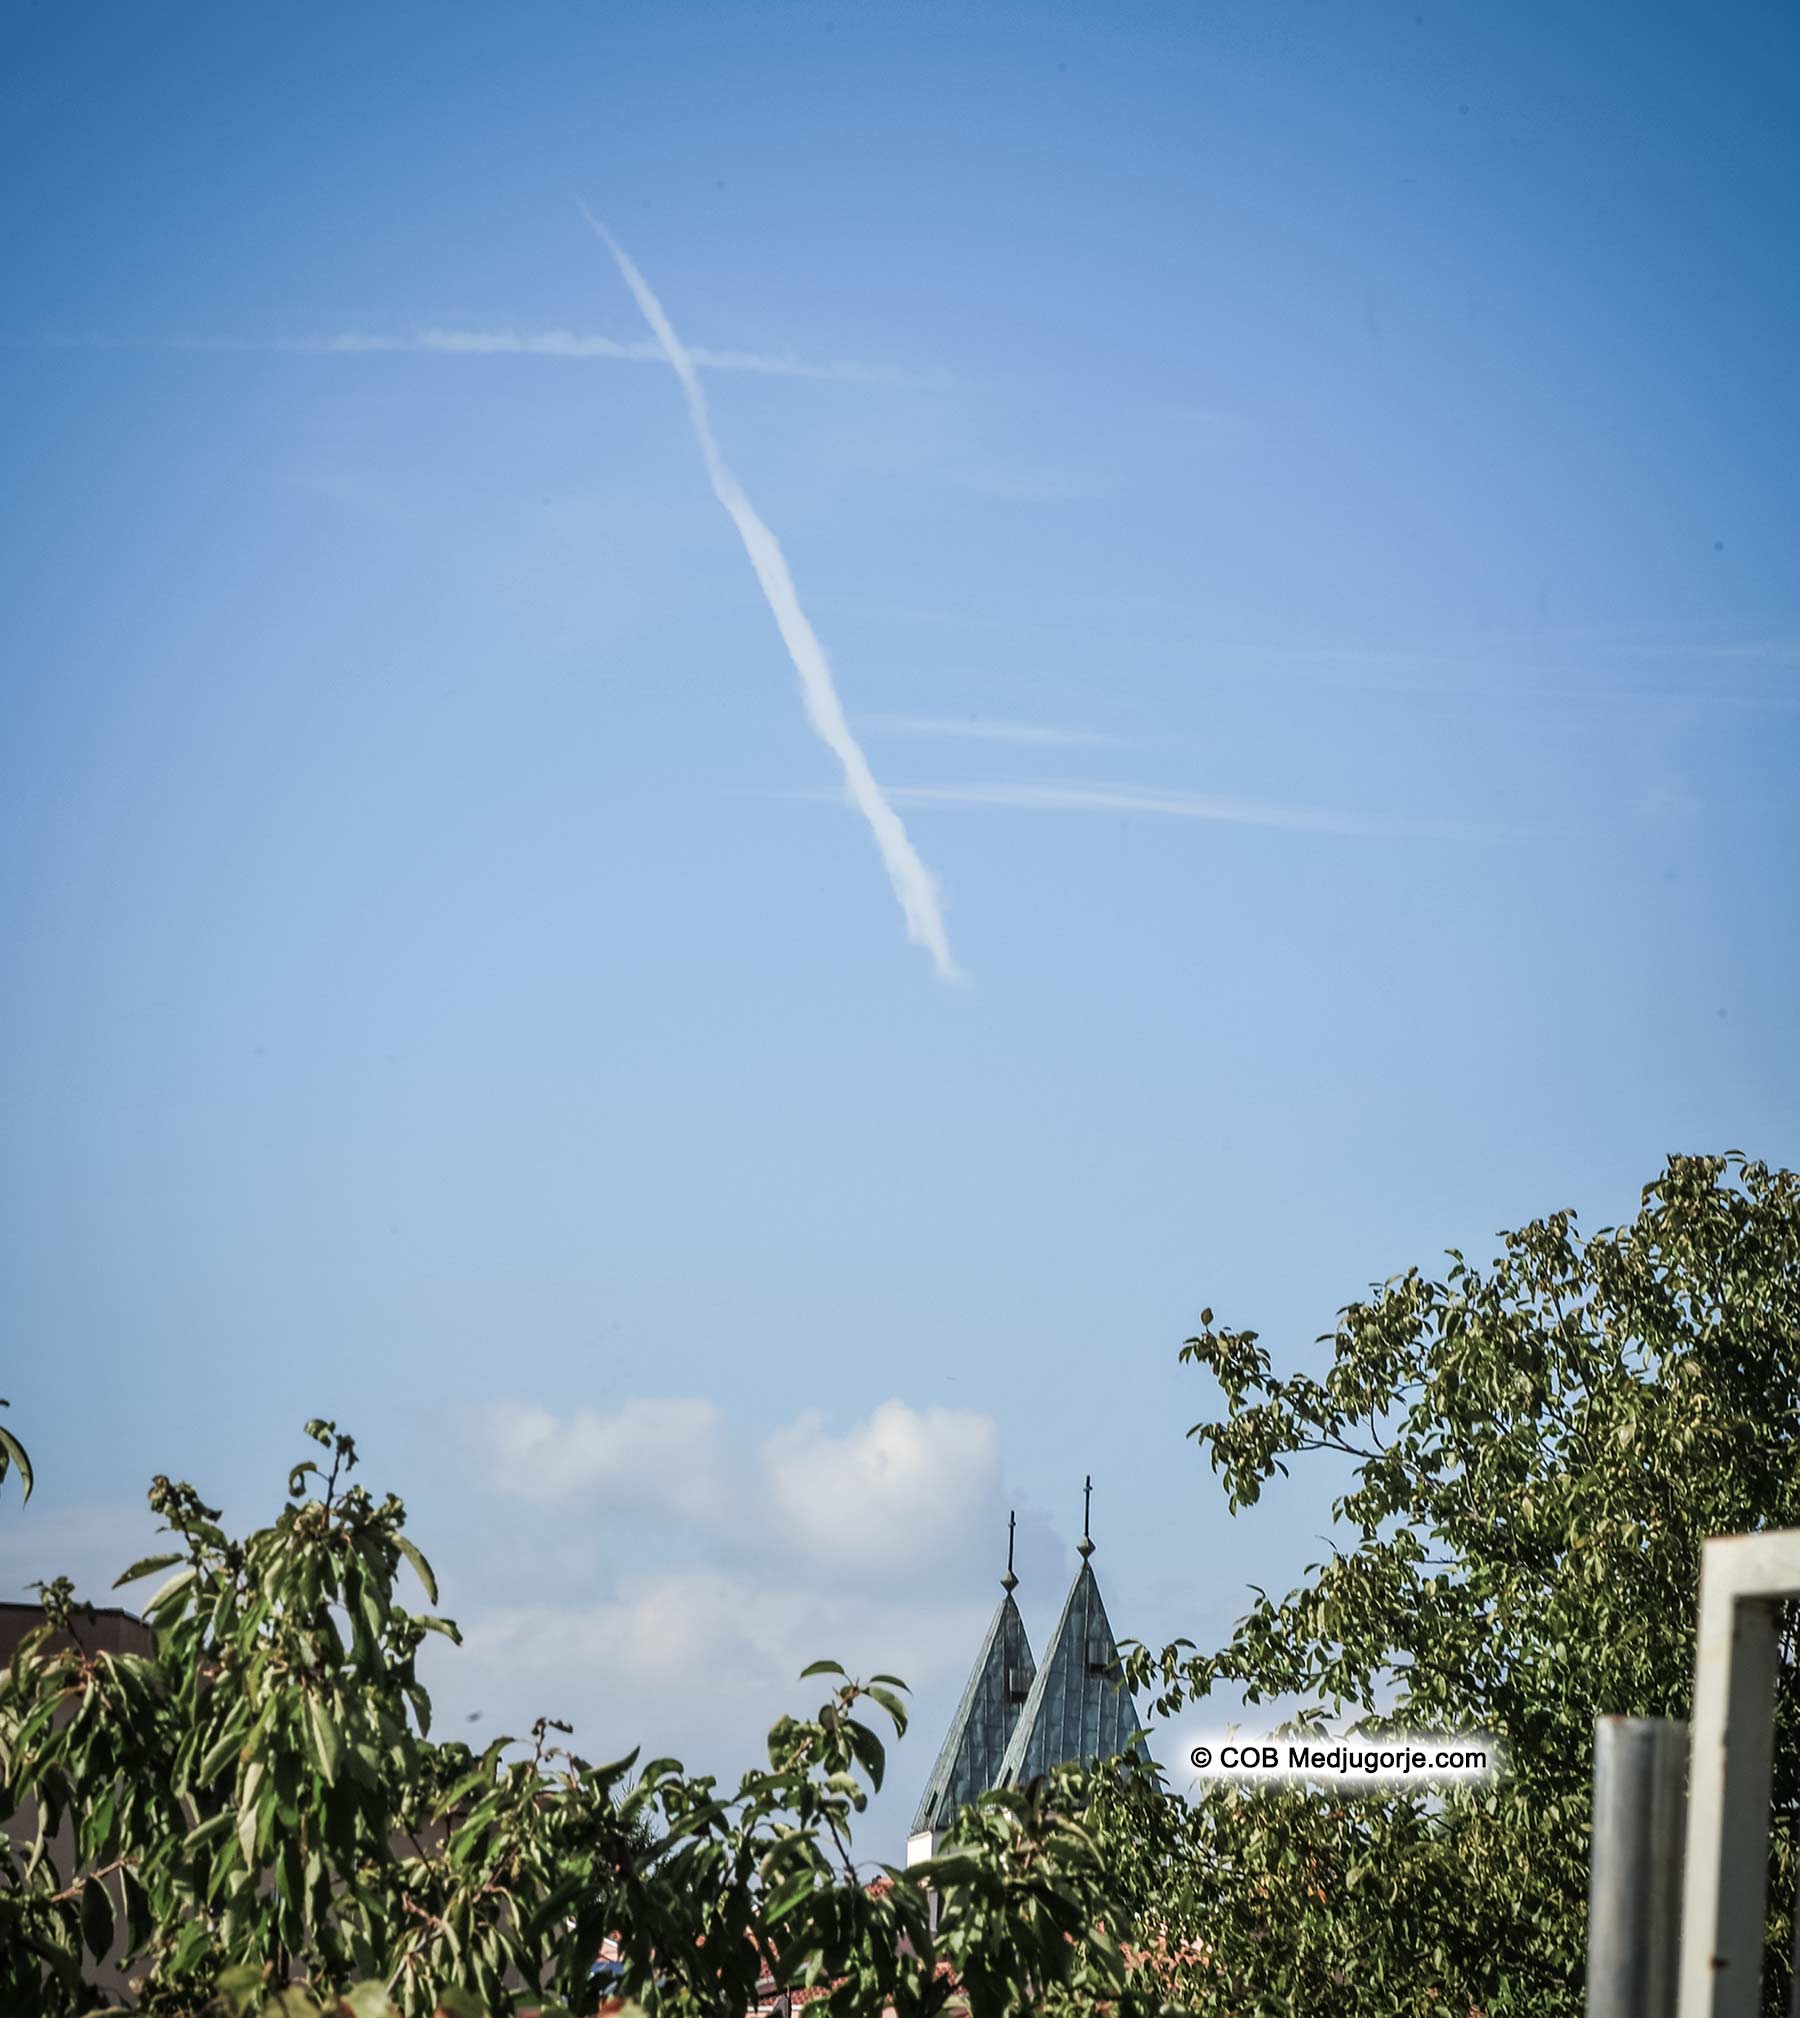 A Cross in the sky in Medjugorje October 5, 2017